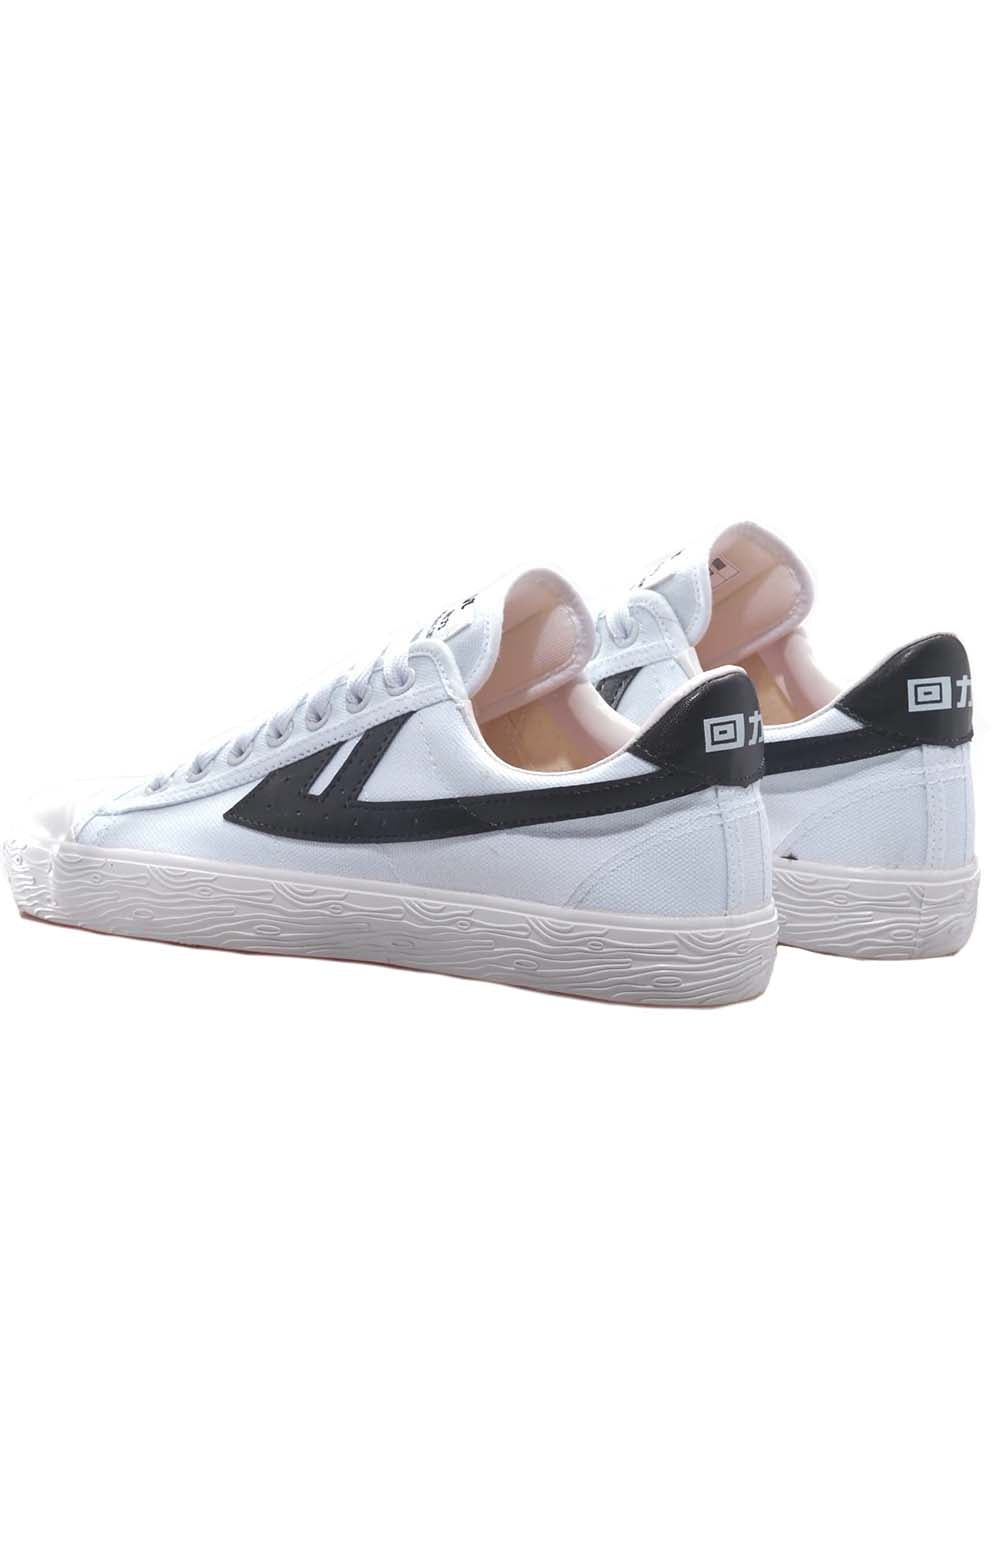 WB-1 Shoes - White/Black